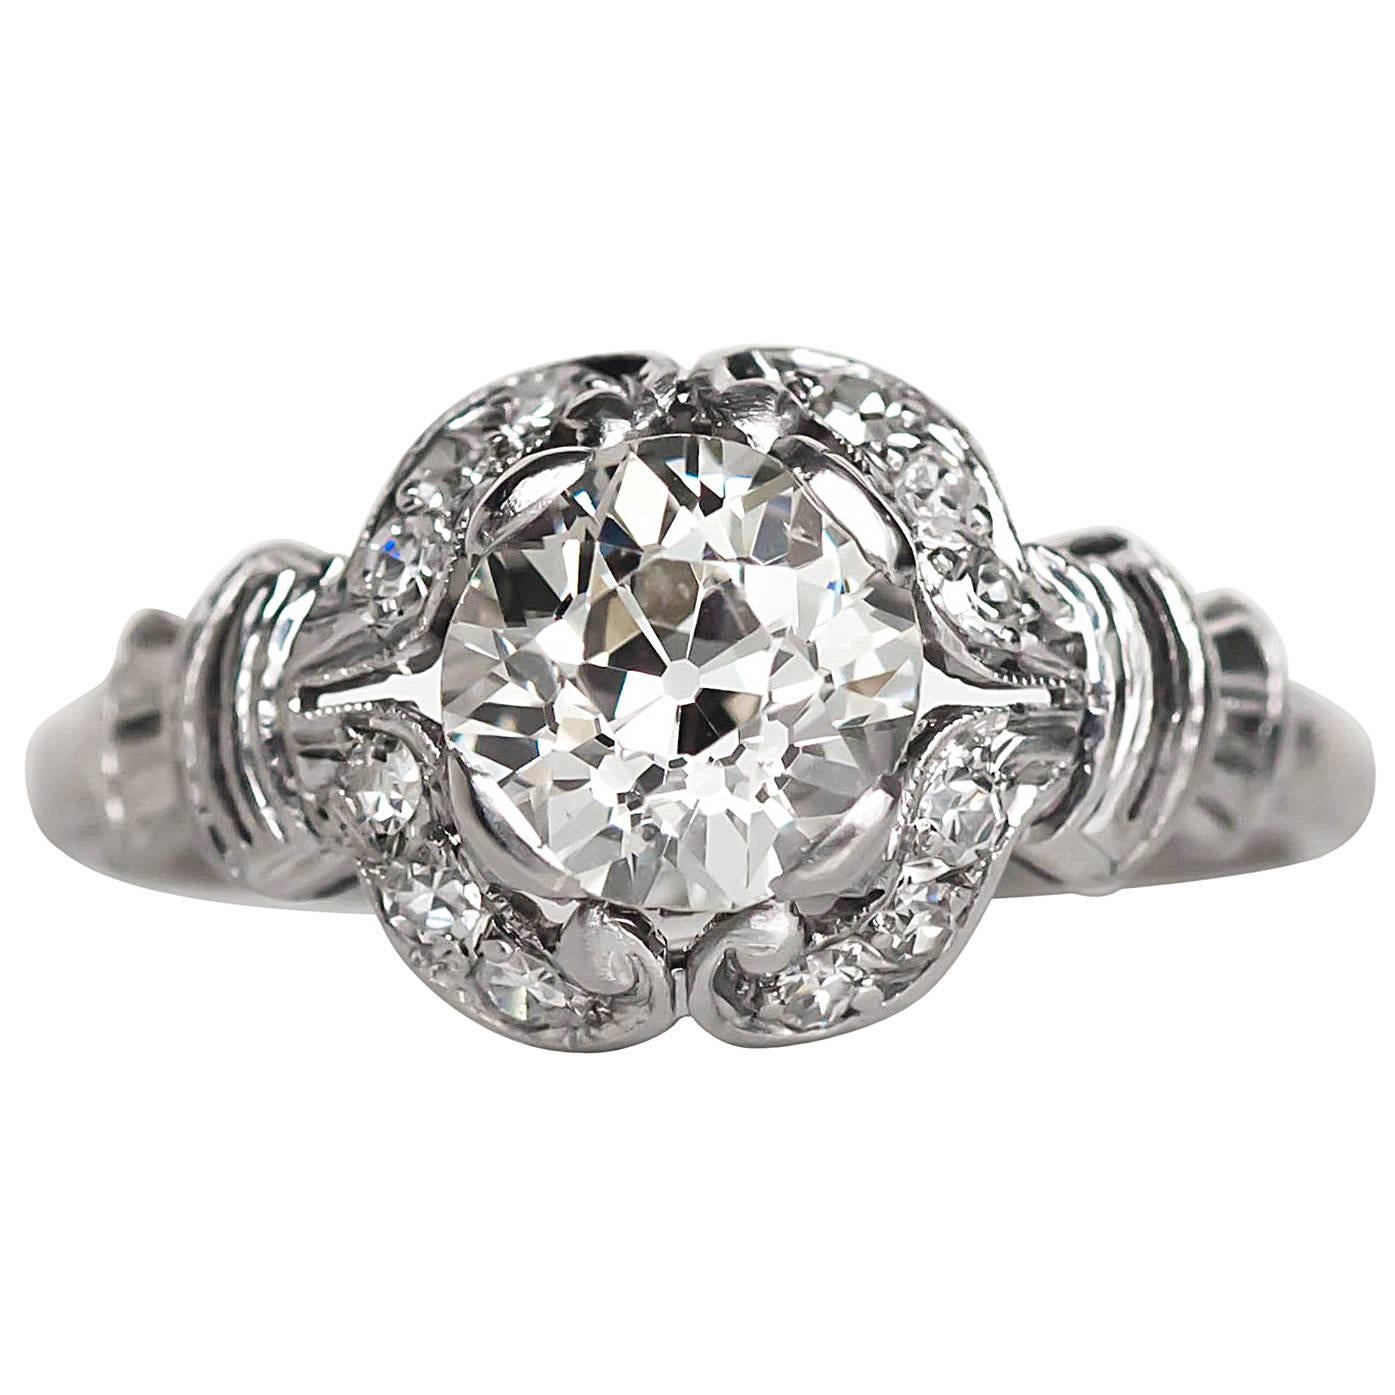 1910 Edwardian Platinum GIA Certified 1.02 Carat Diamond Engagement Ring